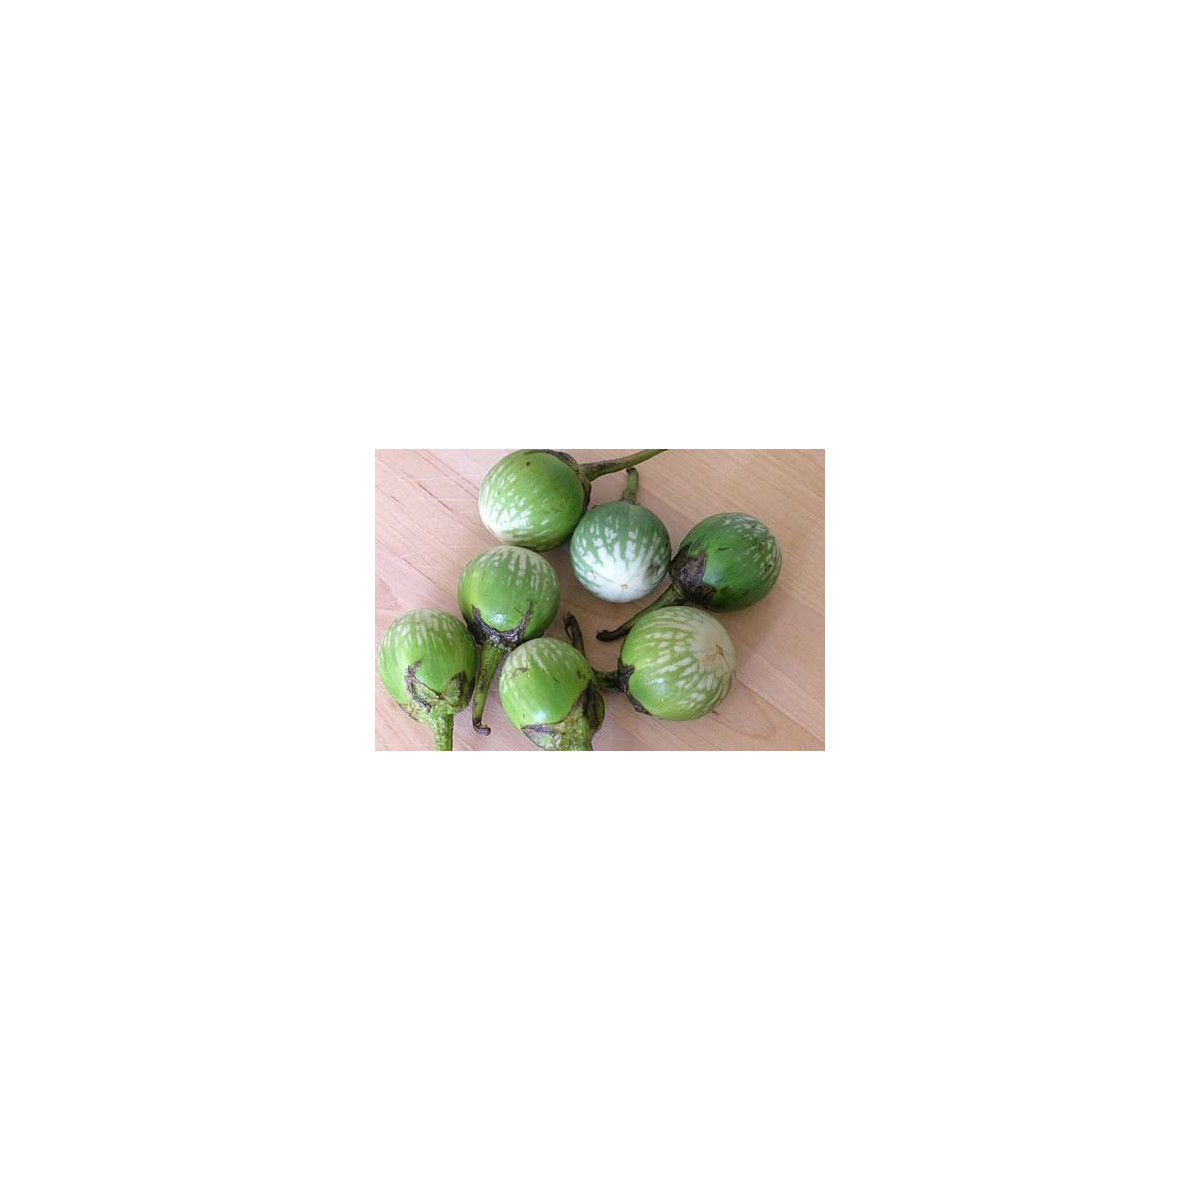 Lilek Zelený tygr - Solanum melongena - semena - 6 ks